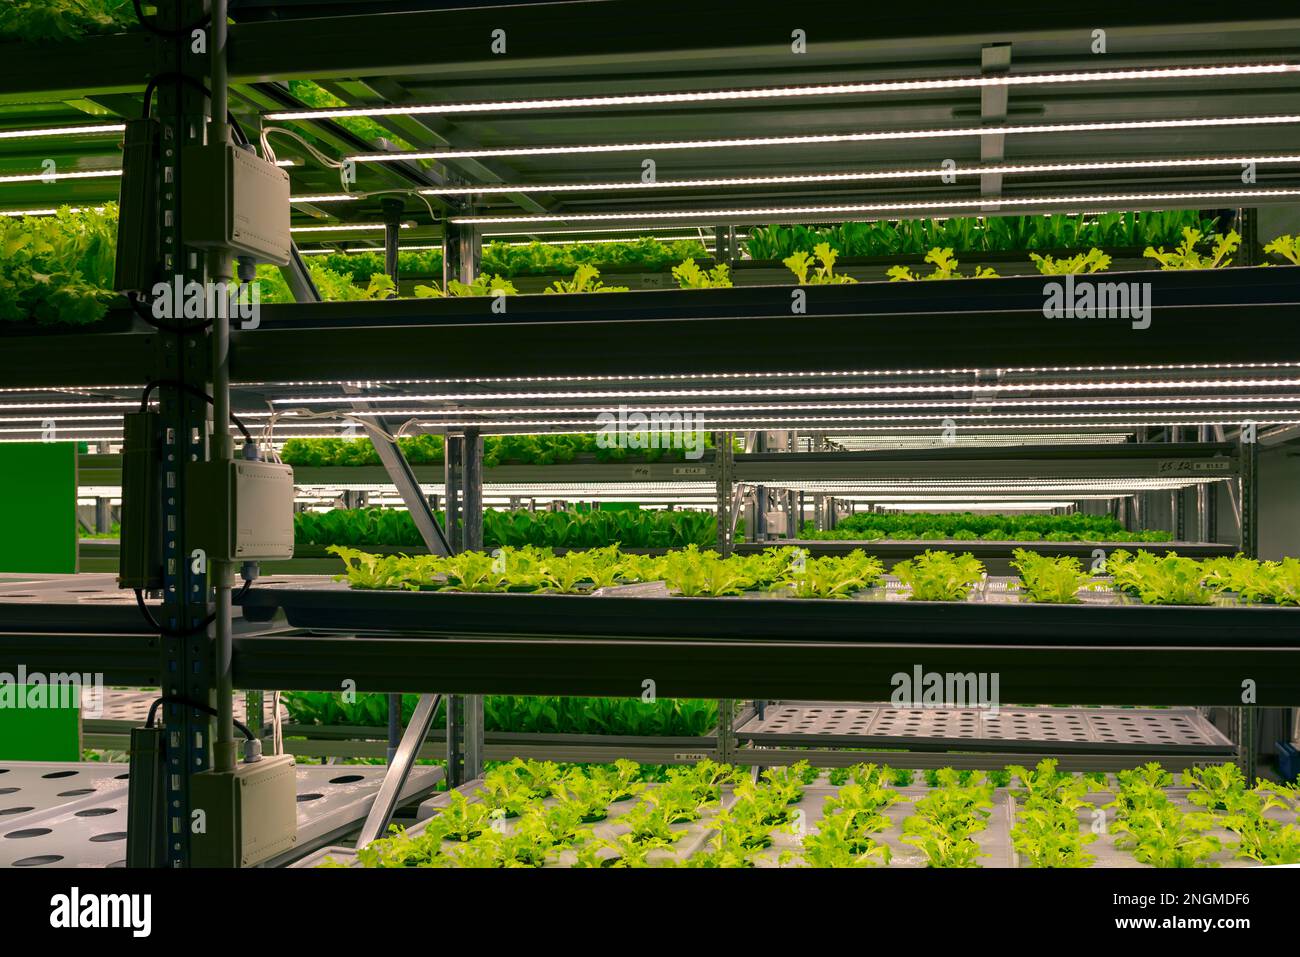 Étagères ferme verticale poussant des plantes vertes fraîches à l'intérieur. Culture automatique de microverts frais. Banque D'Images